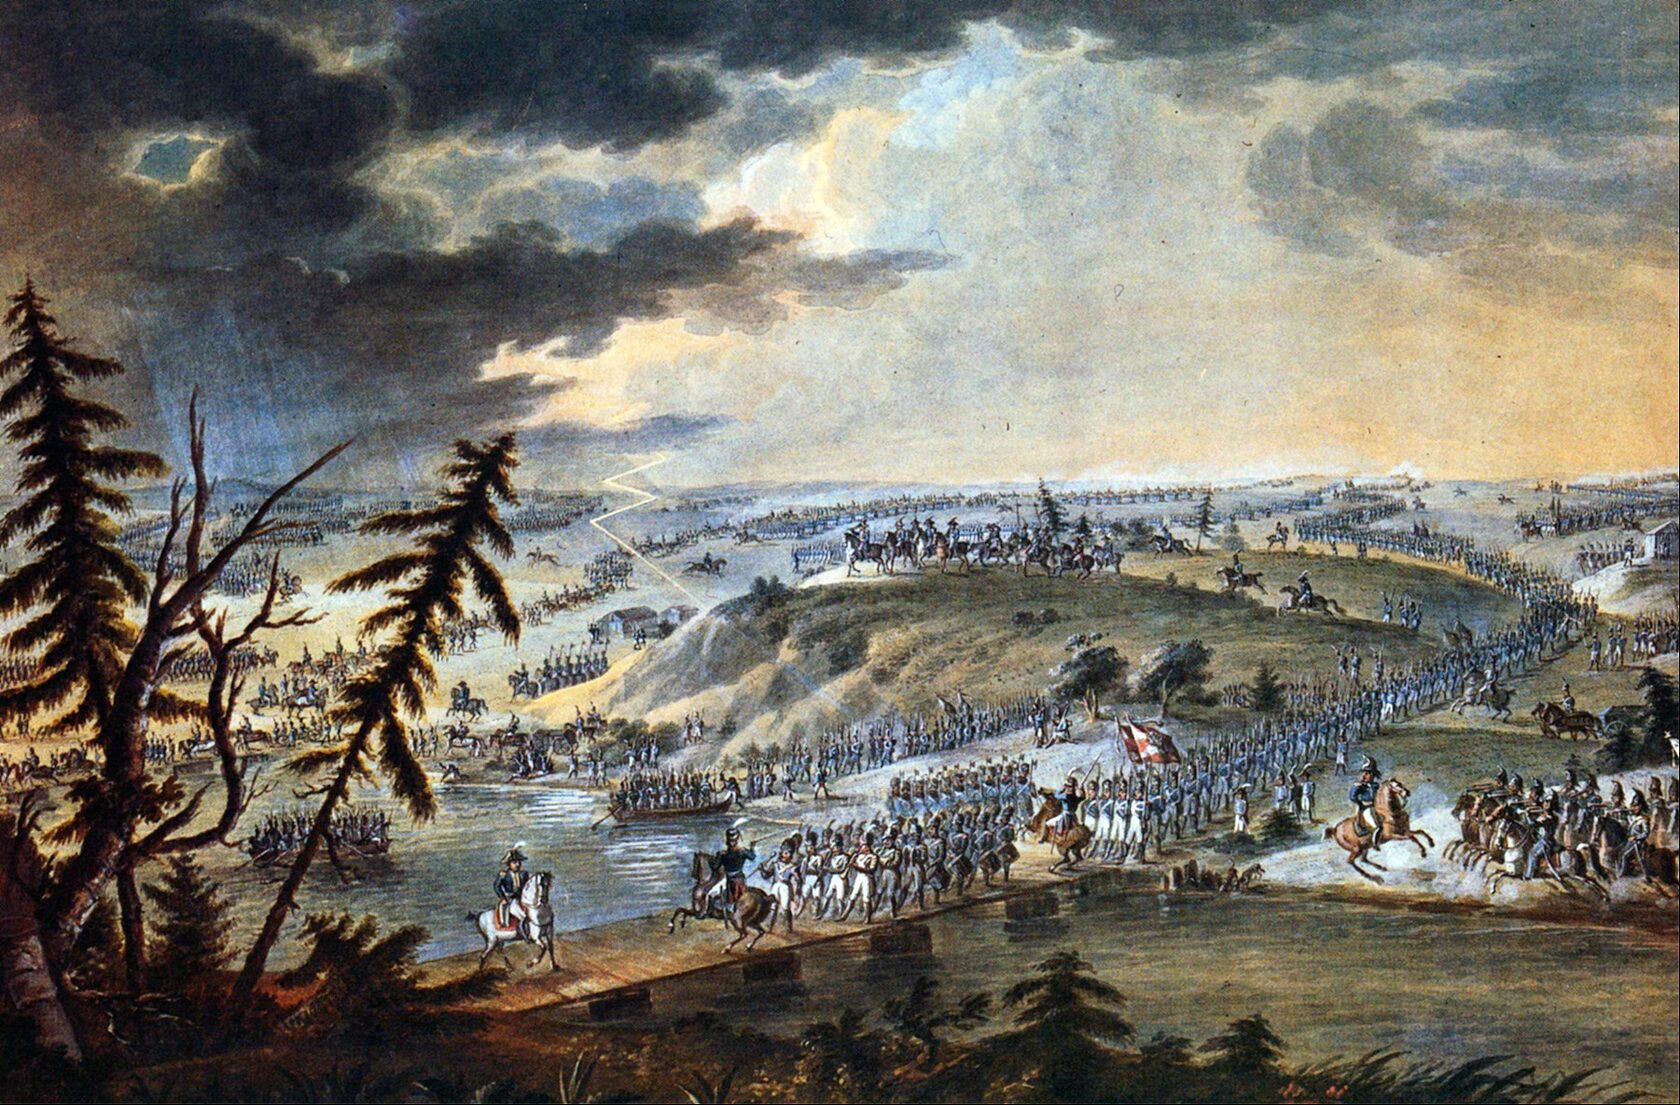 210 лет назад армия Наполеона вторглась в Россию и началась Отечественная война 1812 года